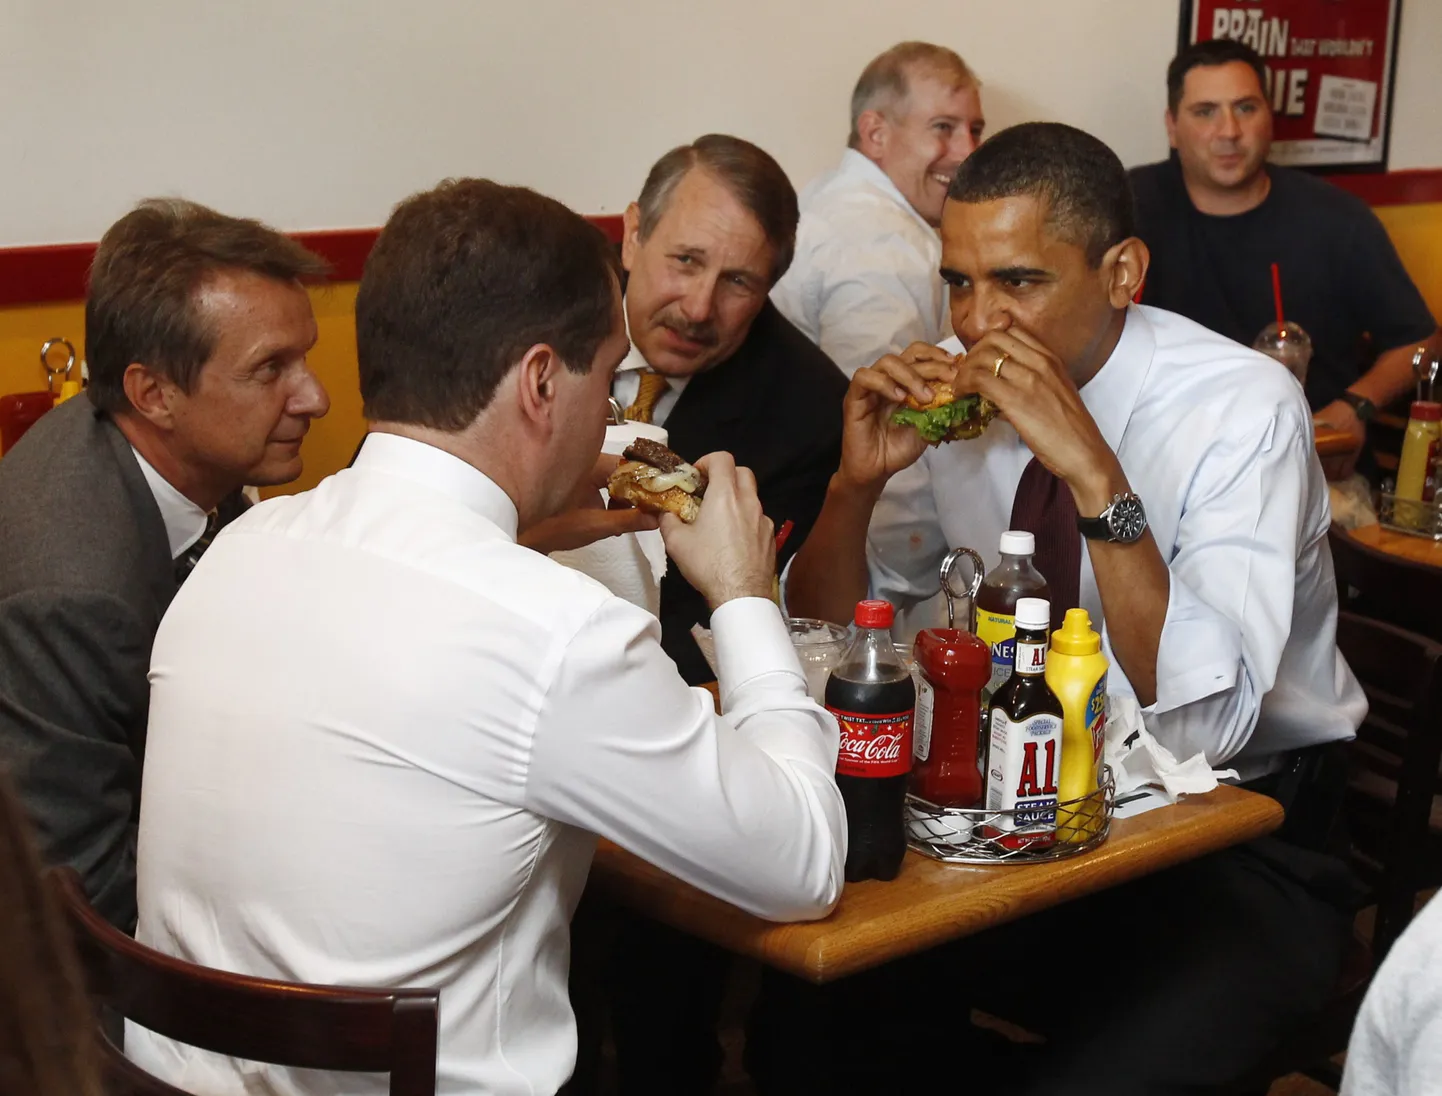 Обама предложил Медведеву лучший чизбургер в городе. 24 июня 2010.